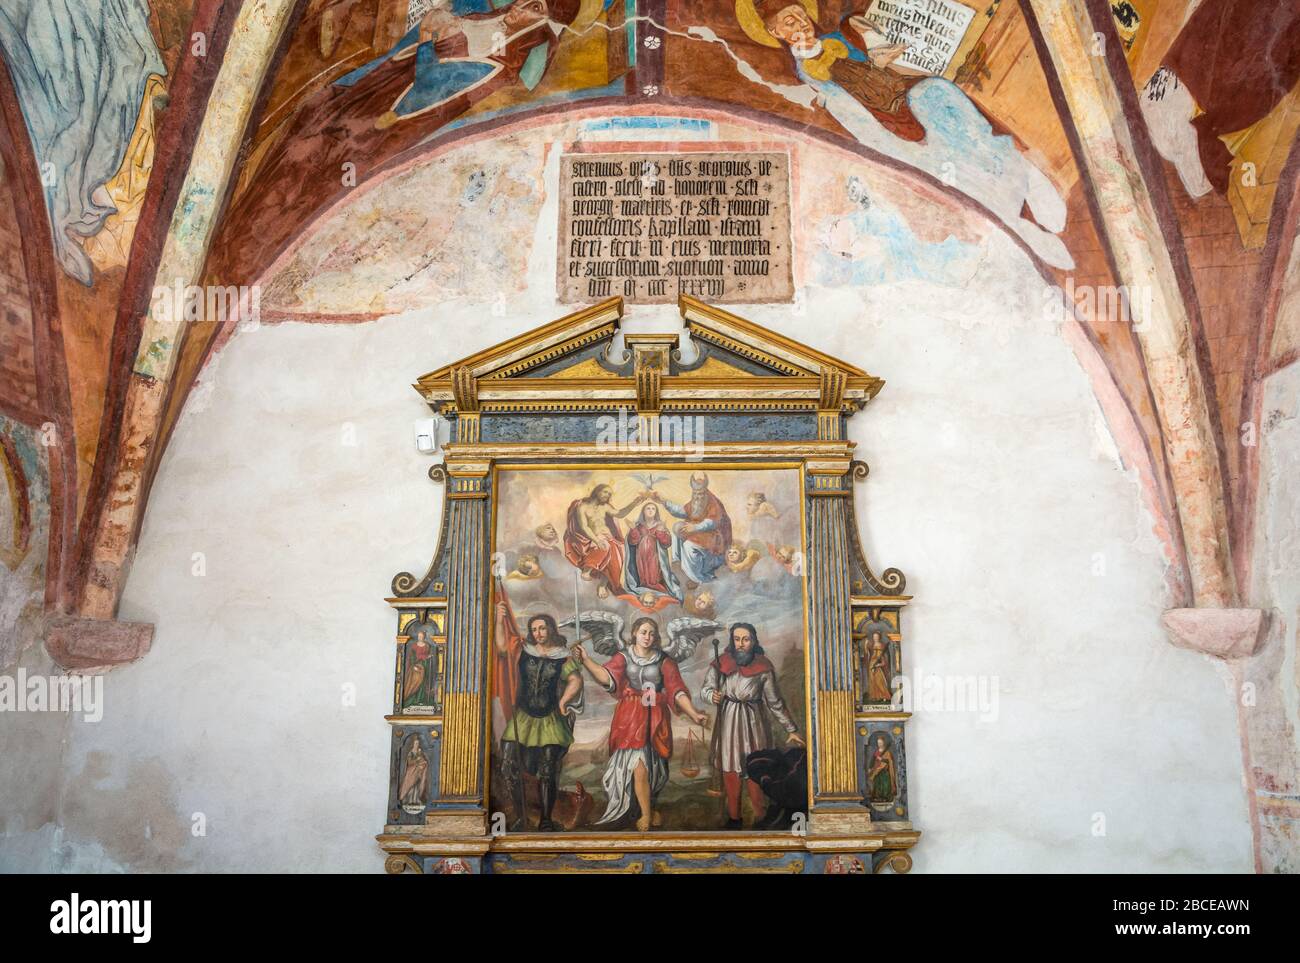 Sanctuaire de San Romedio. Fresques des murs extérieurs du Sanctuaire. Non Valley, Trentin-Haut-Adige, nord de l'Italie - province de Trento Banque D'Images